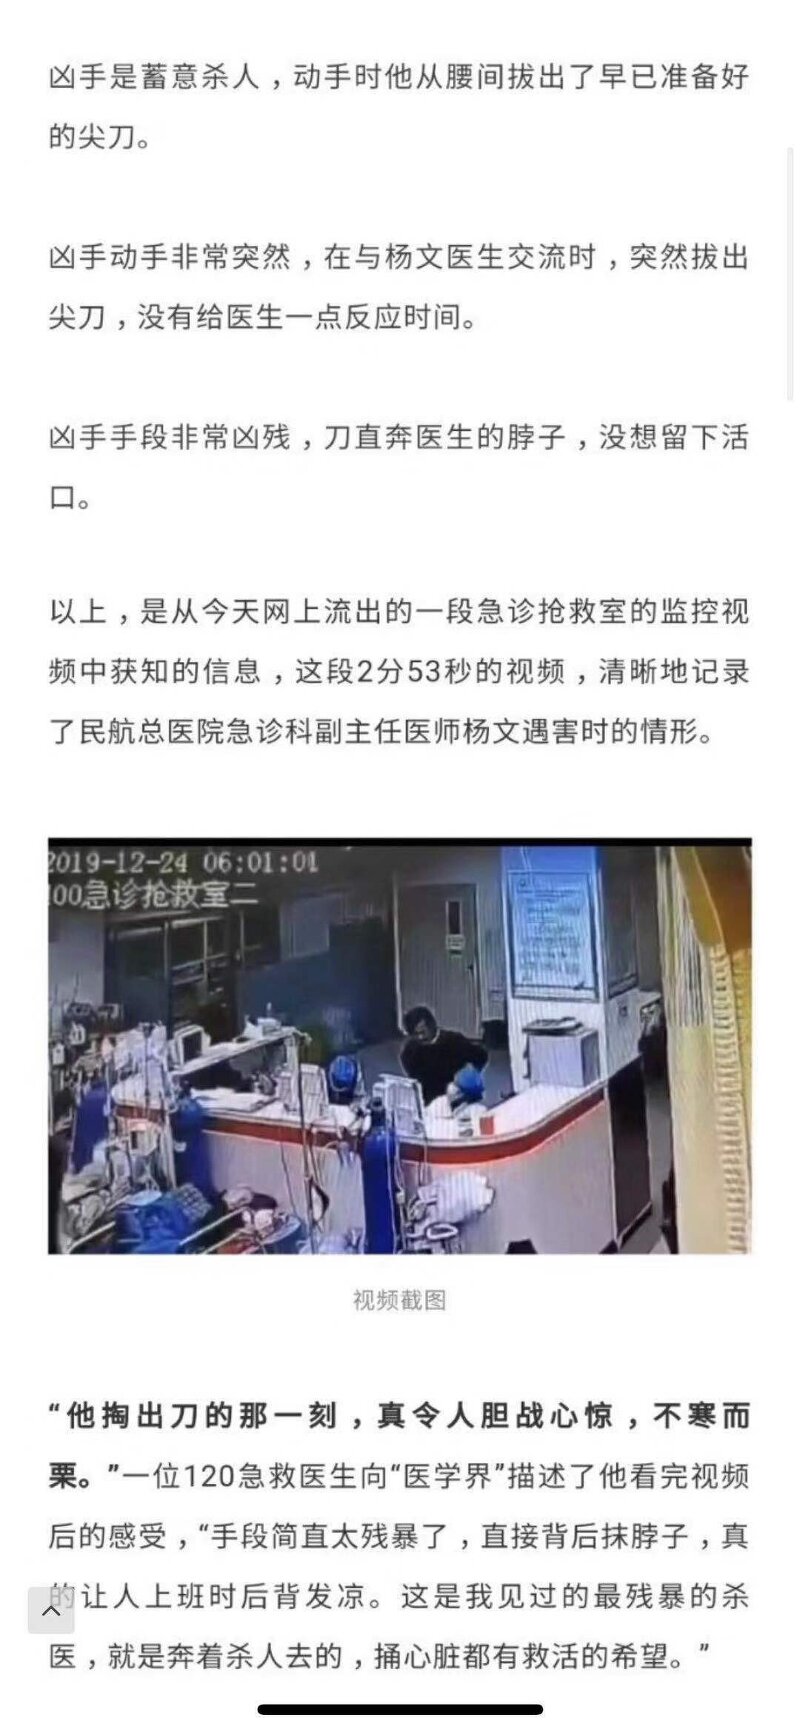 지금 중국에서 이슈되는 살인사건